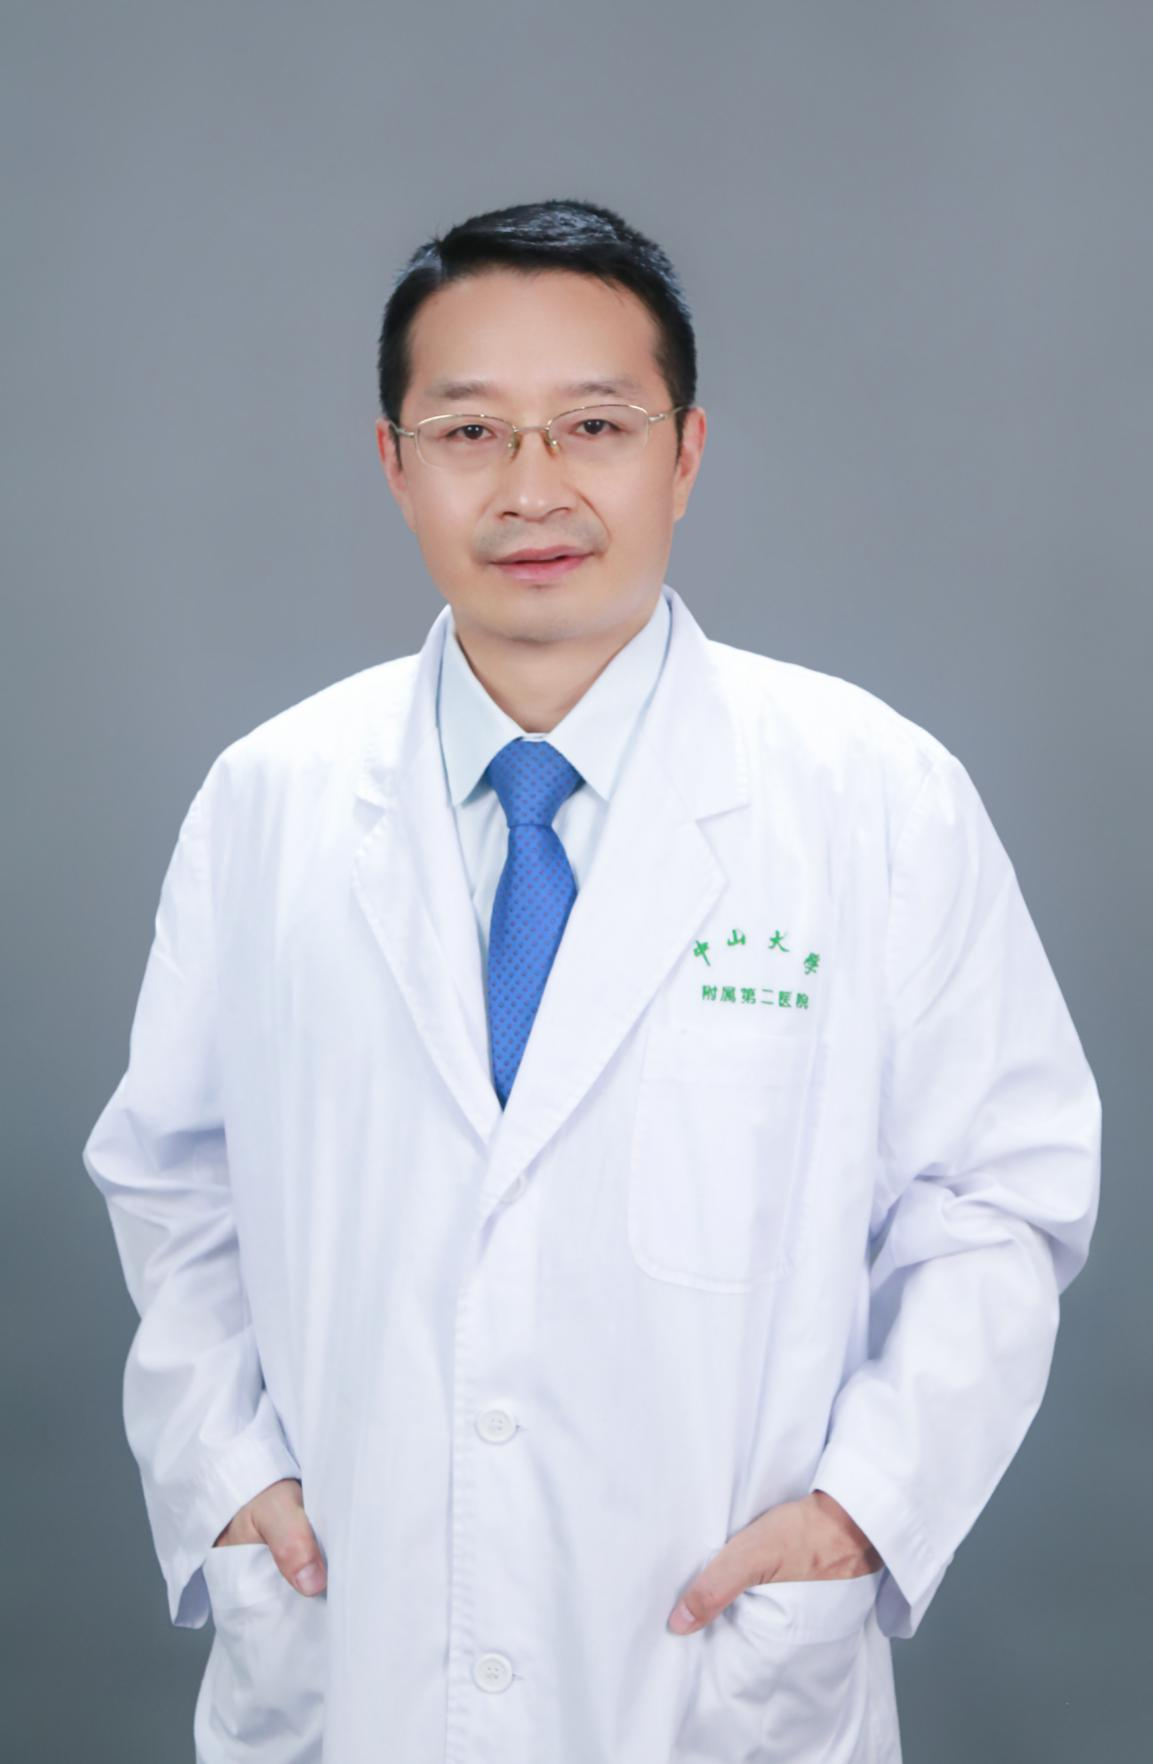 姜辉教授履新北京大学第一医院党委书记-MedSci.cn